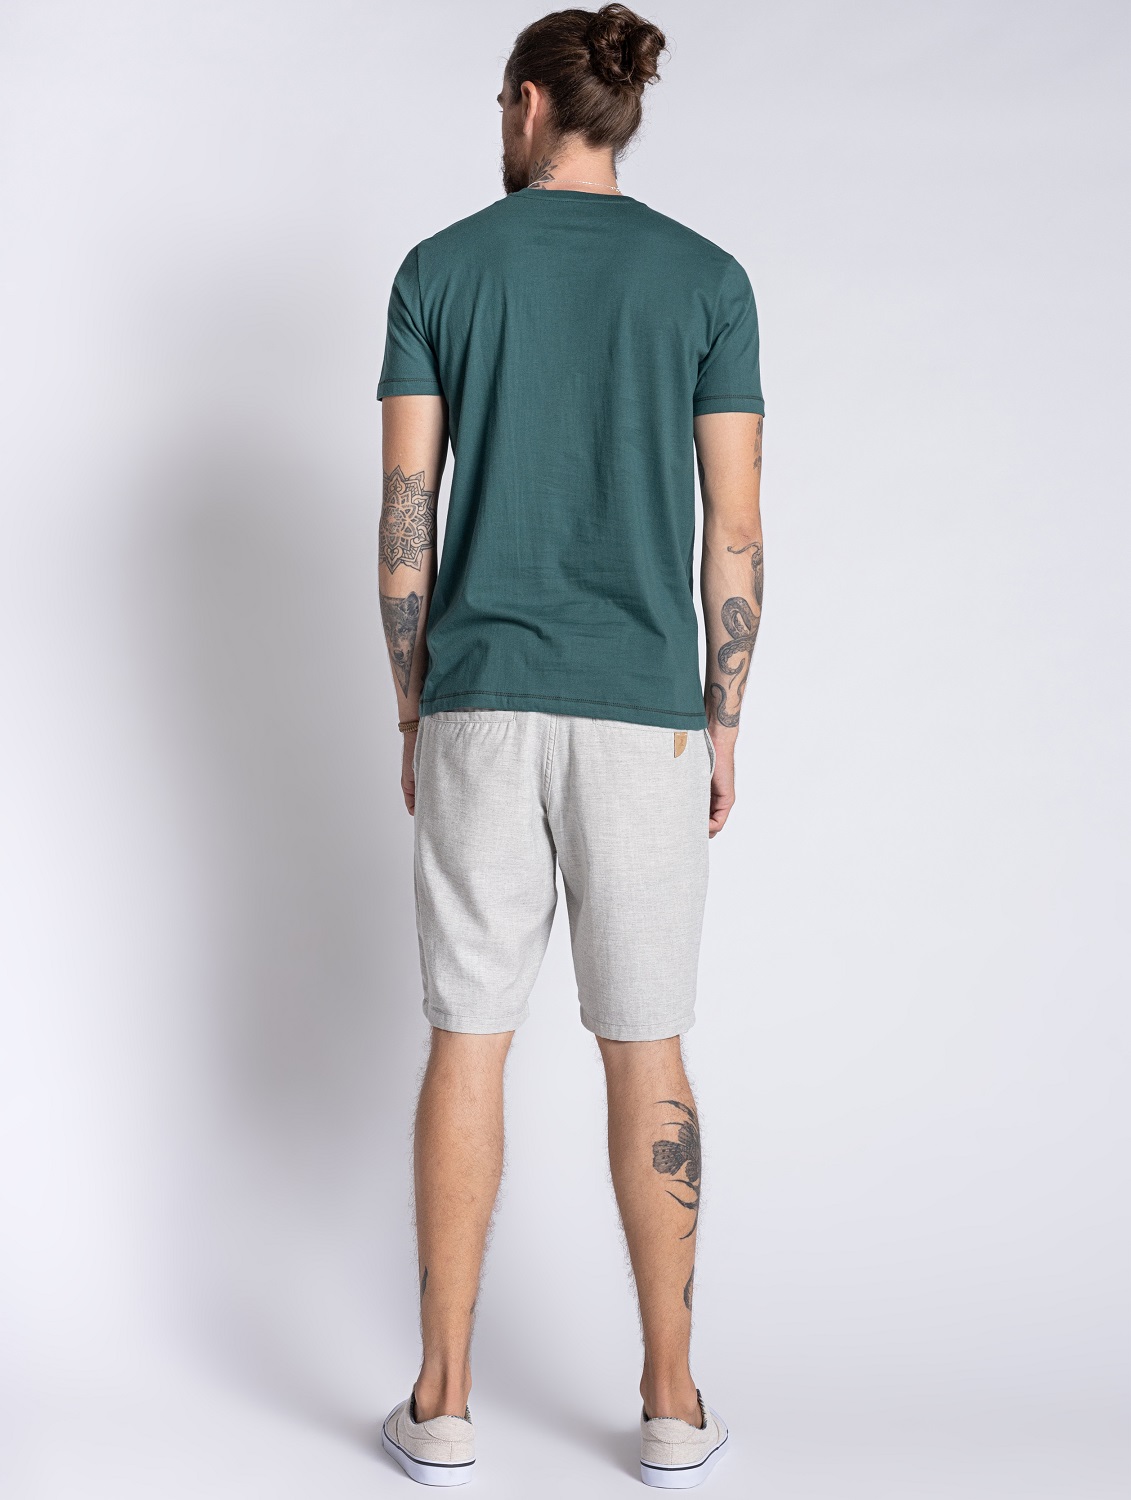 Camiseta em Algodão Masculina Verde  - OVBK